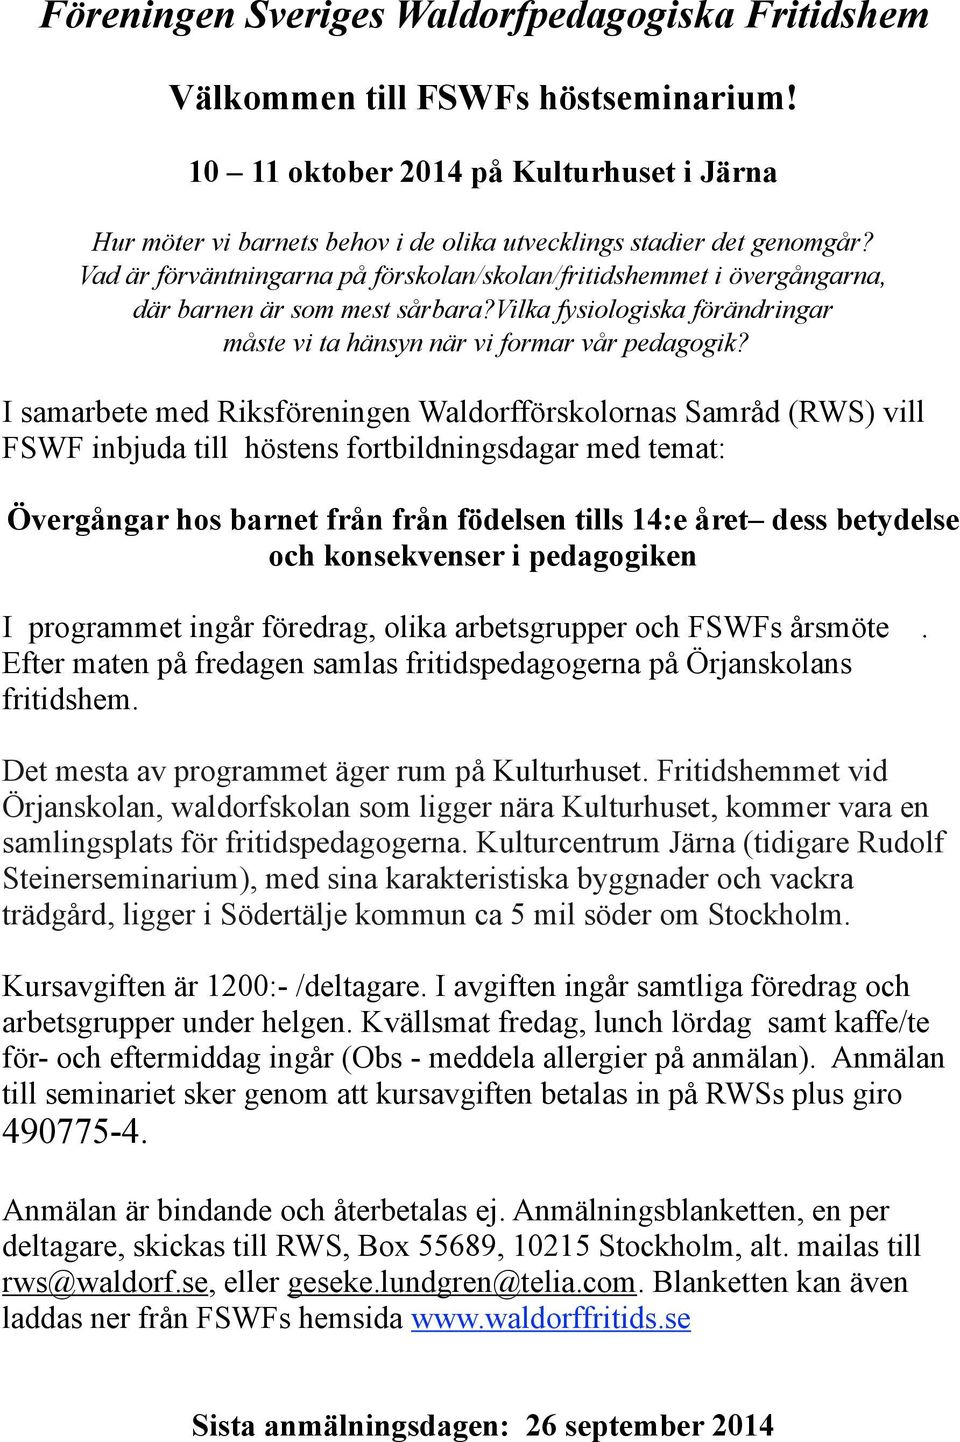 I samarbete med Riksföreningen Waldorfförskolornas Samråd (RWS) vill FSWF inbjuda till höstens fortbildningsdagar med temat: Övergångar hos barnet från från födelsen tills 14:e året dess betydelse